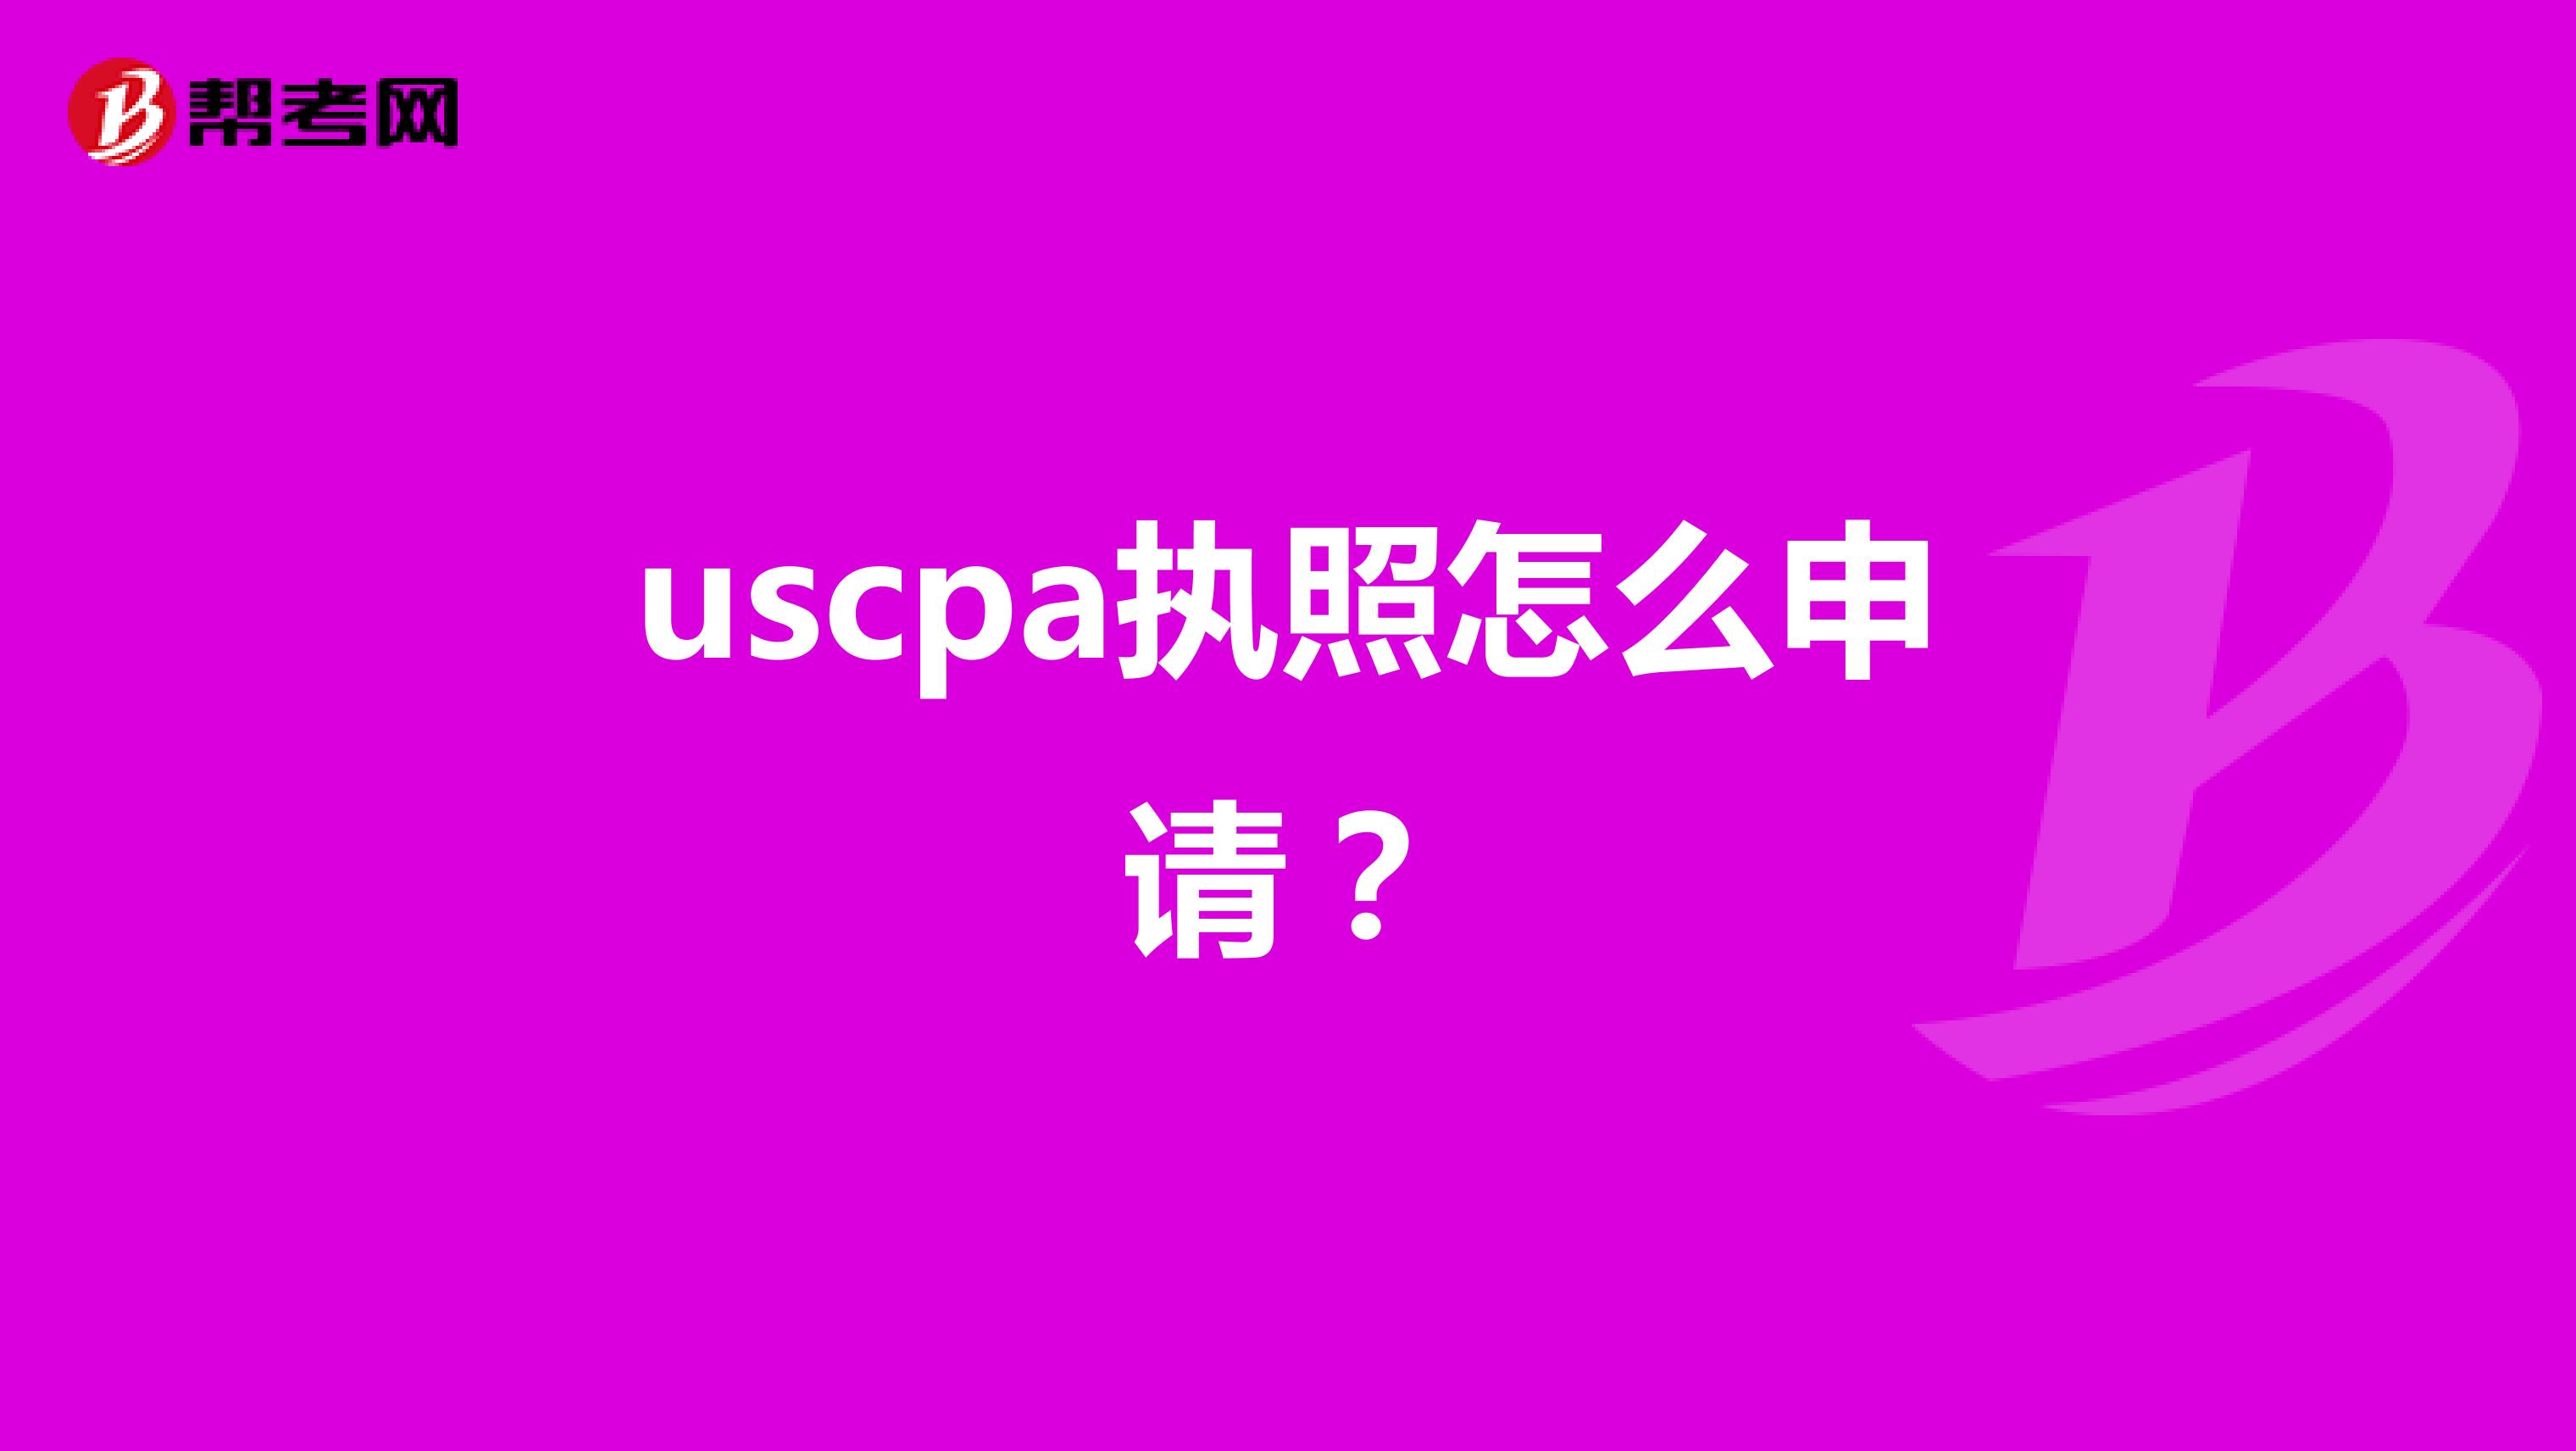 uscpa执照怎么申请？